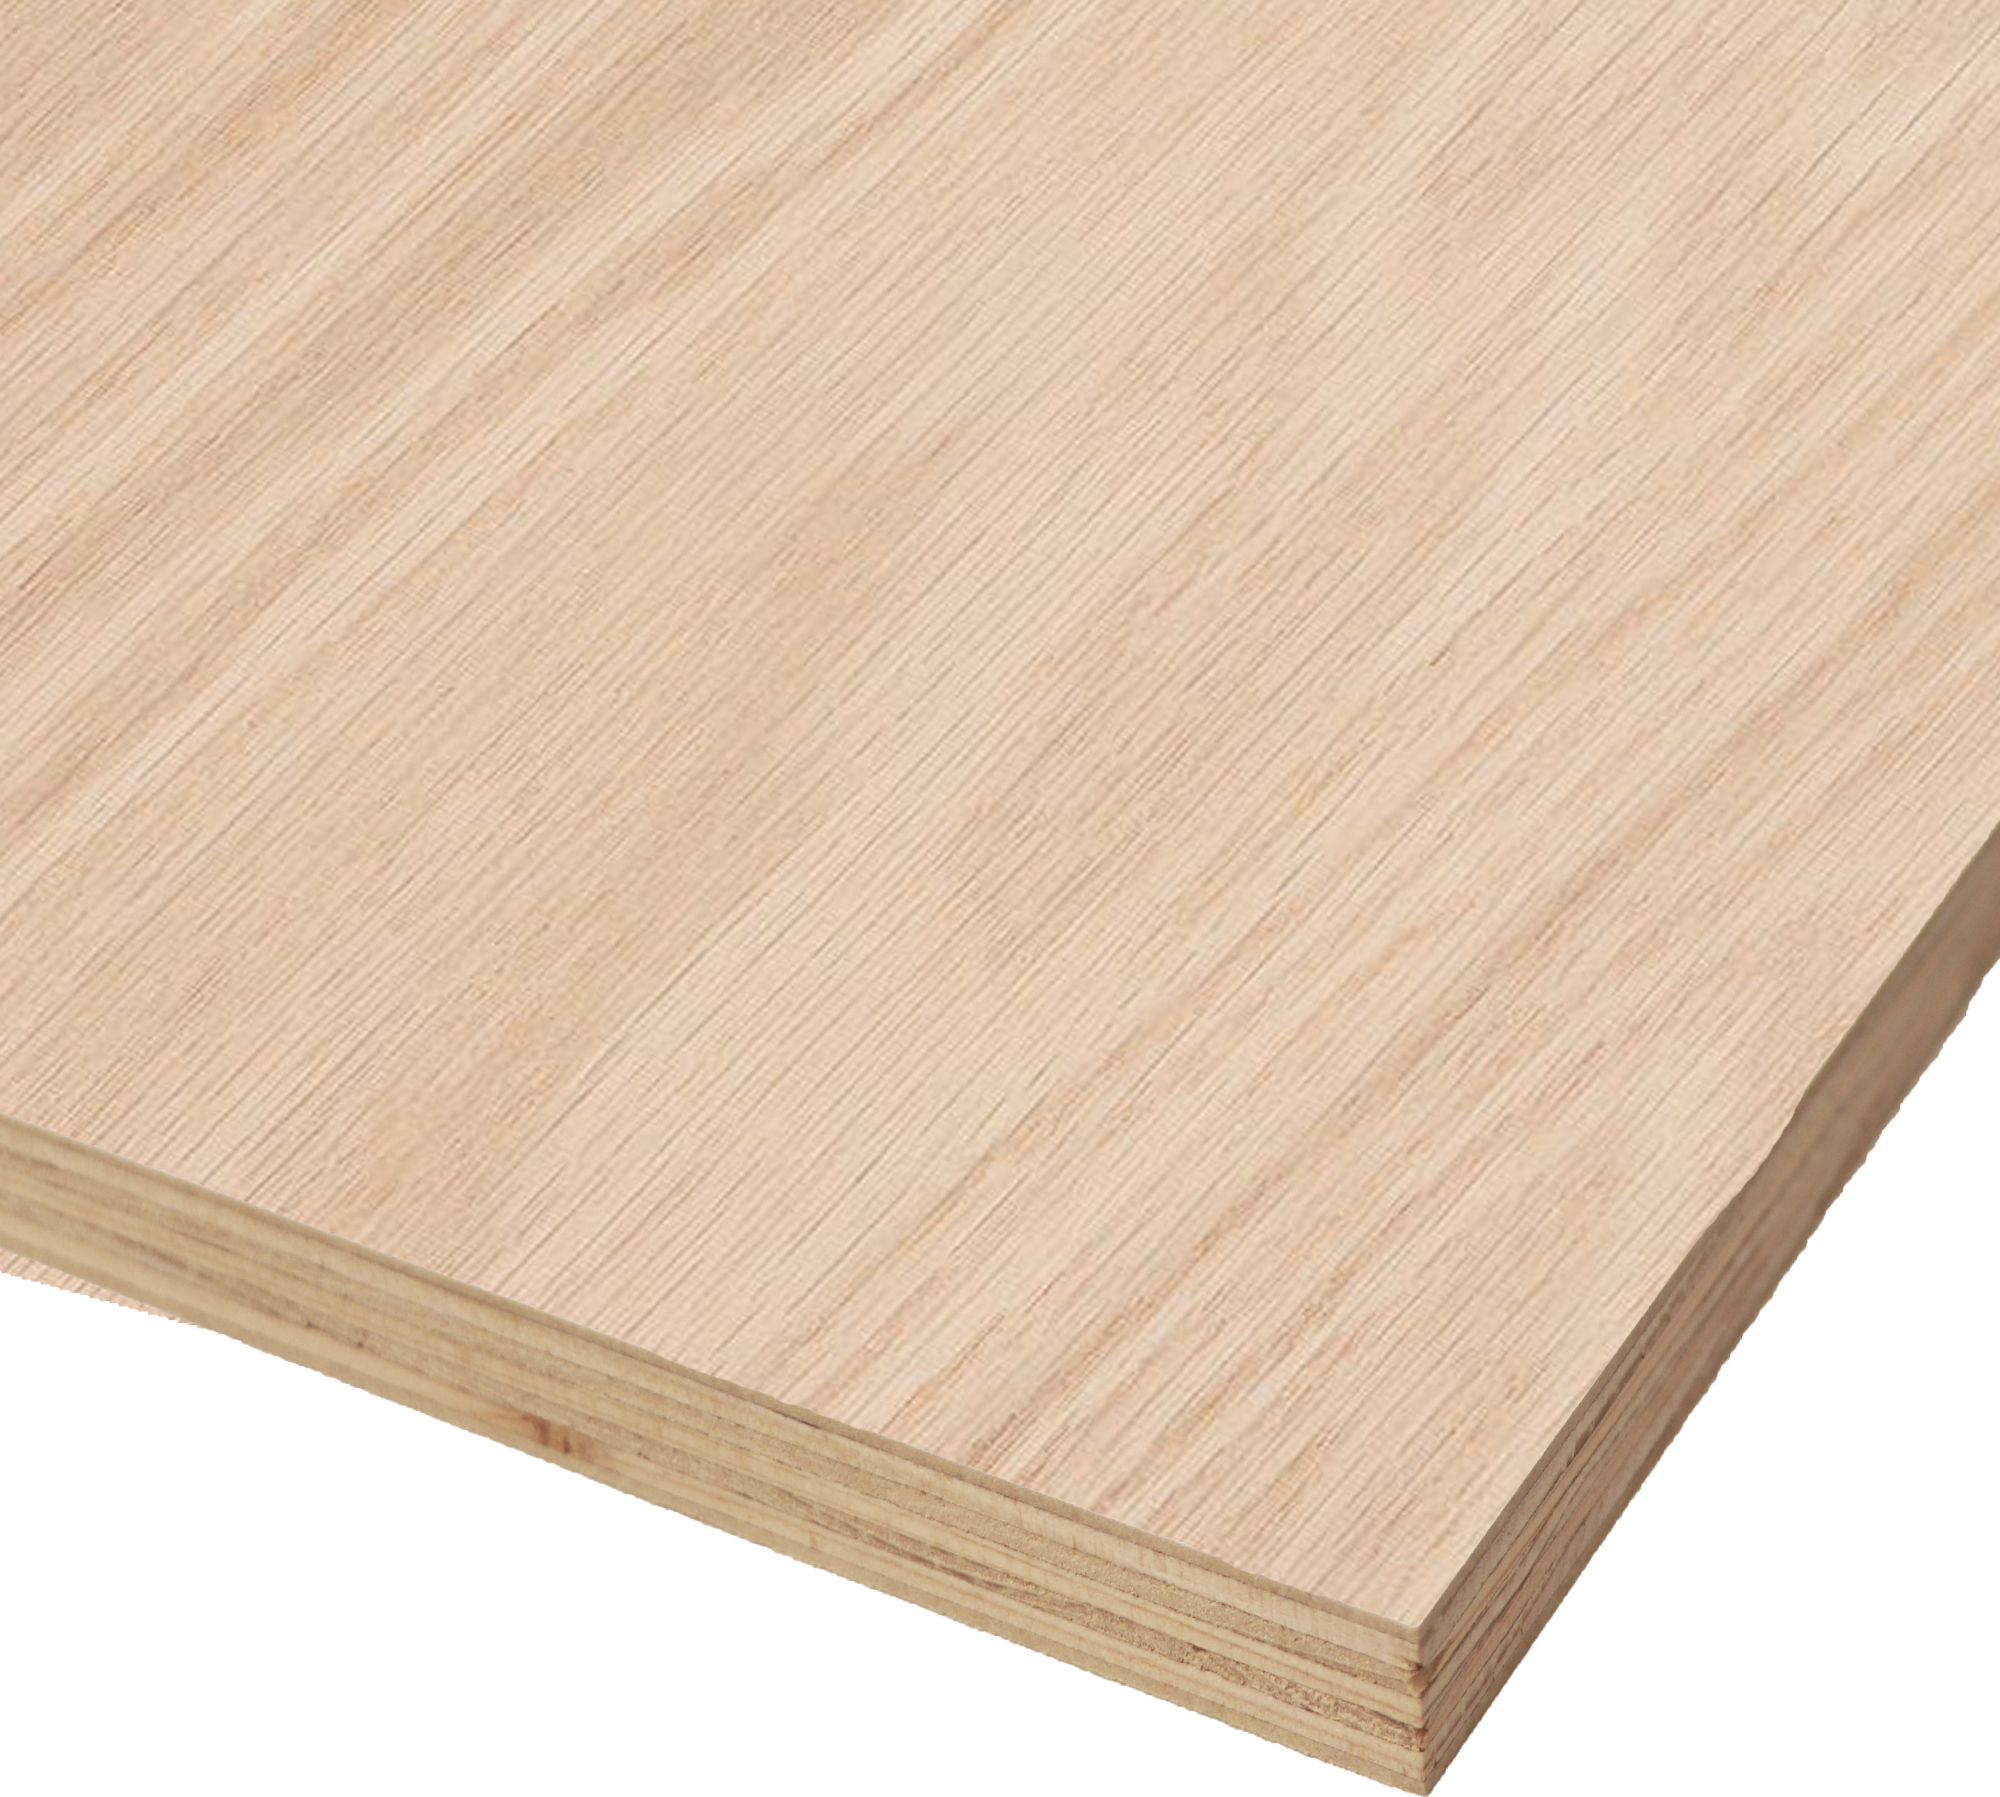 oak veneer plywood 4x8